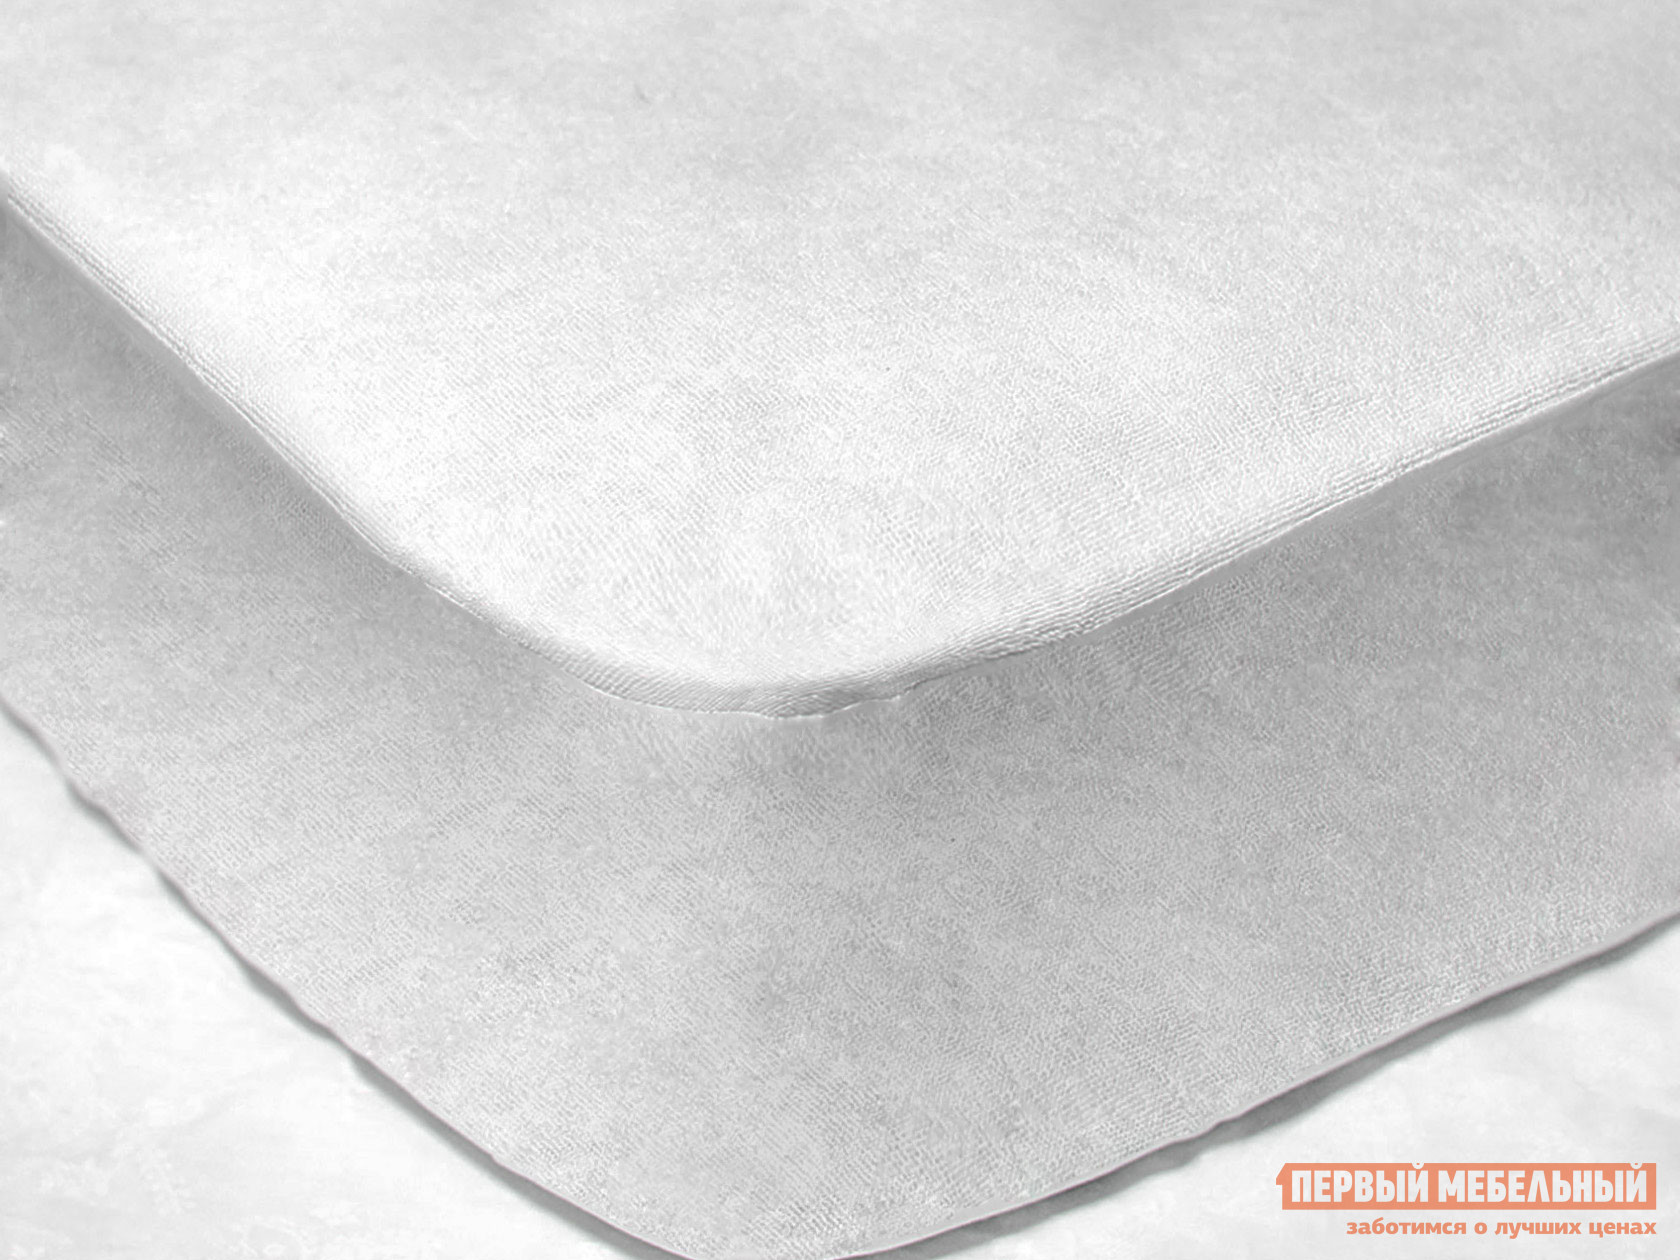 Чехол для матраса  Фулл протекшн с бортом Белый махровый, 1400 Х 2000 мм от Первый Мебельный